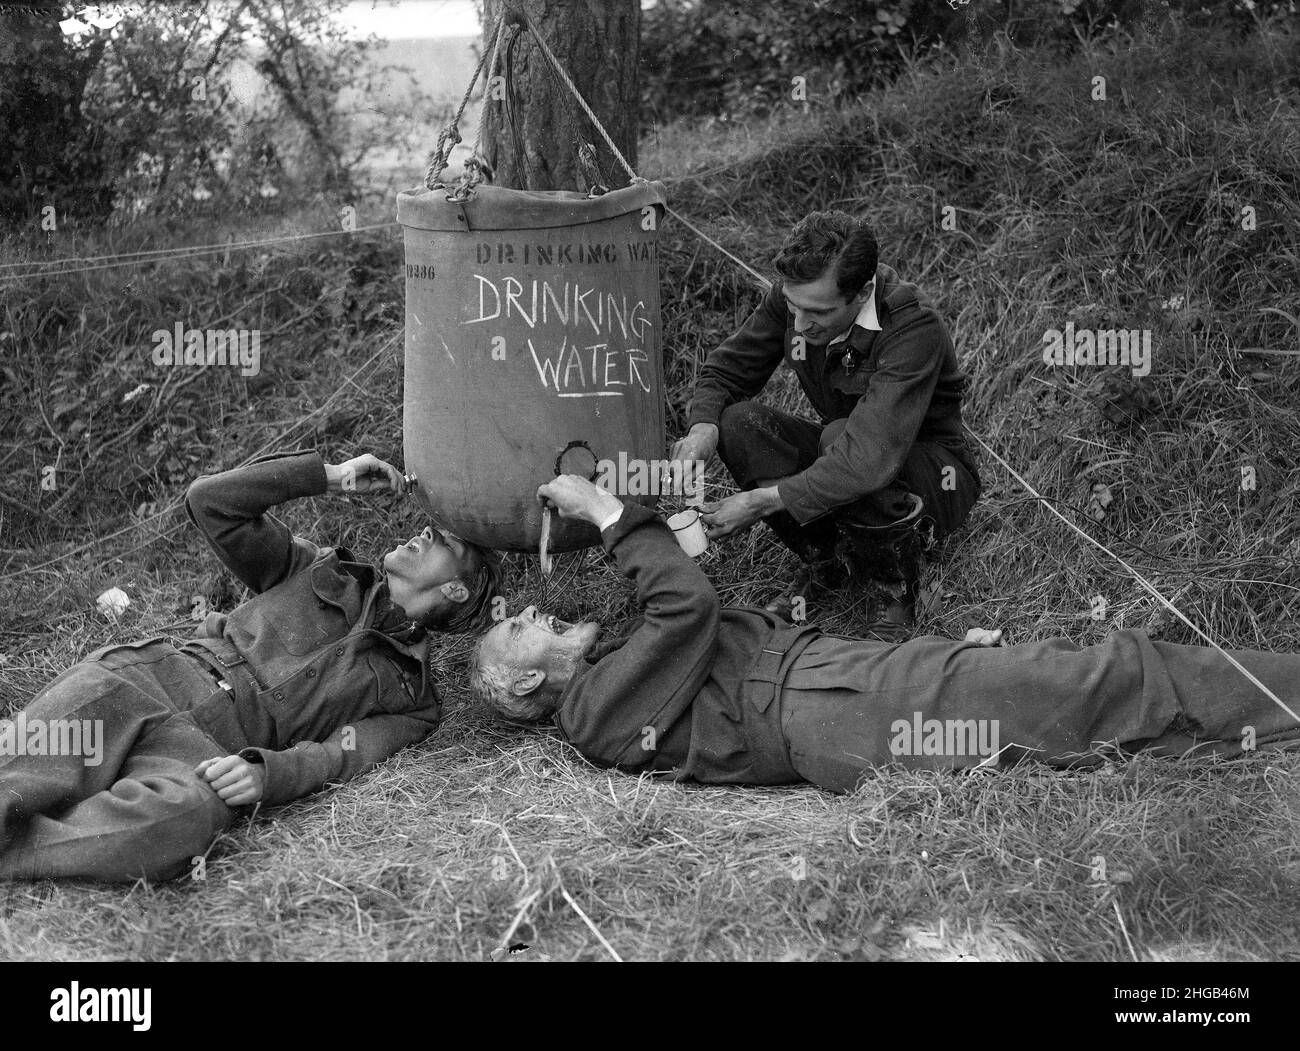 Nordfrankreich Weltkrieg zwei RAF-Männer trinken aus einem Feldwasserbehälter. GRÖSSERE DATEIEN AUF ANFRAGE ERHÄLTLICH Stockfoto